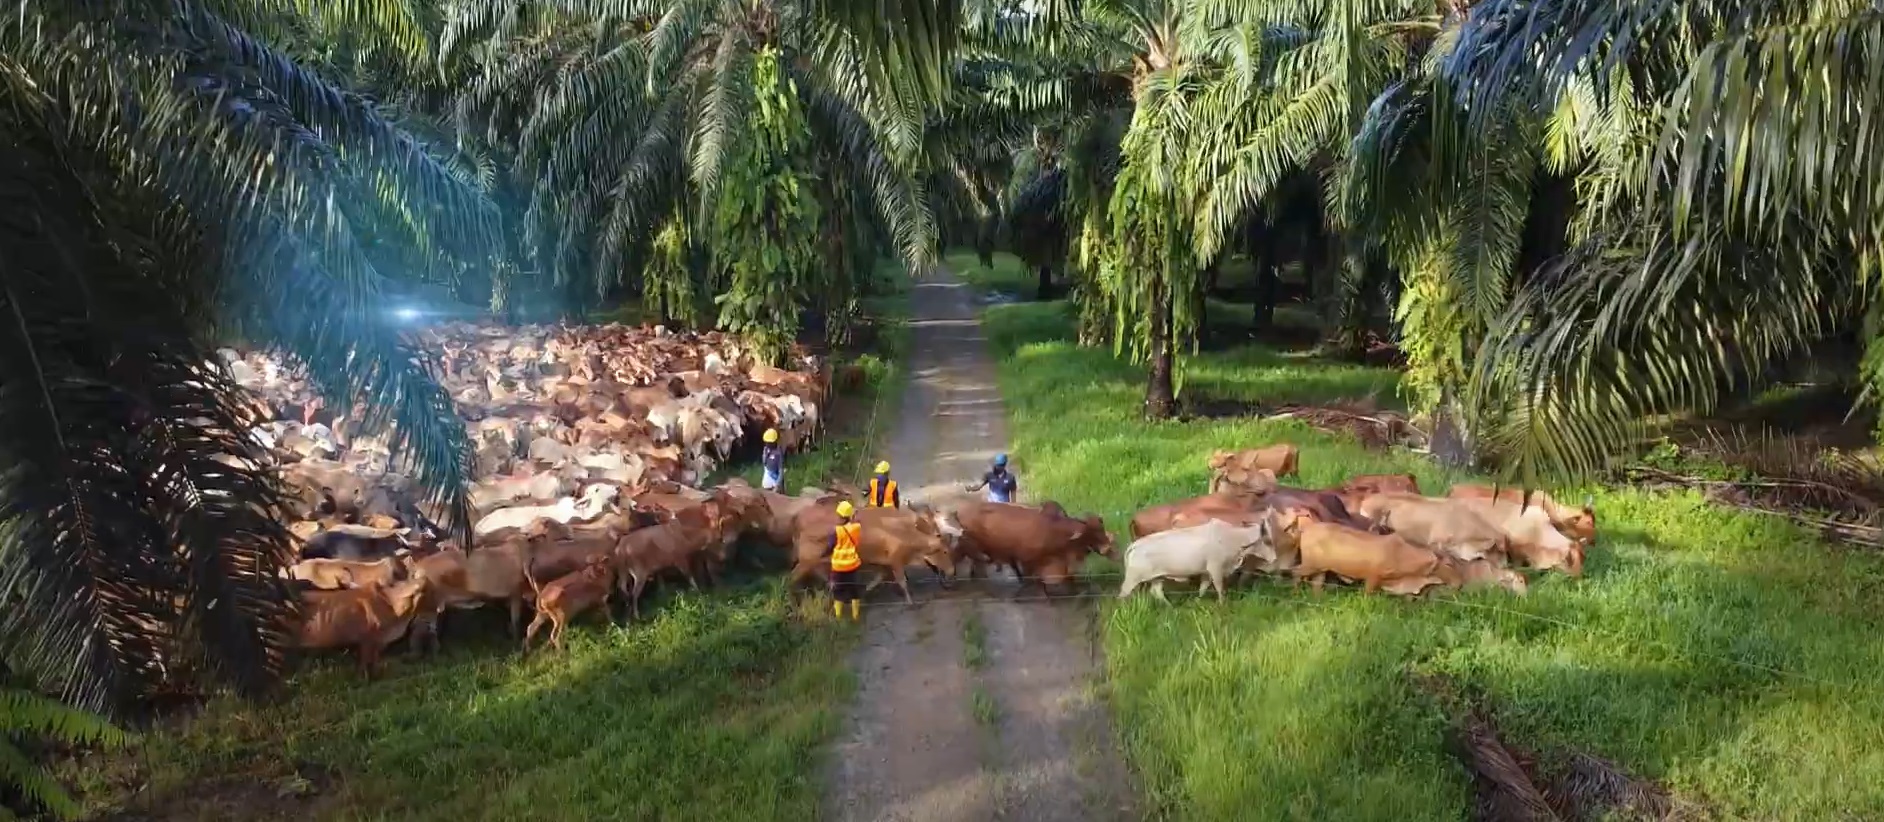 Sawit Kinabalu s’attend à ce que le projet d’élevage bovin renforce le niveau d’autosuffisance bovine de Sabah